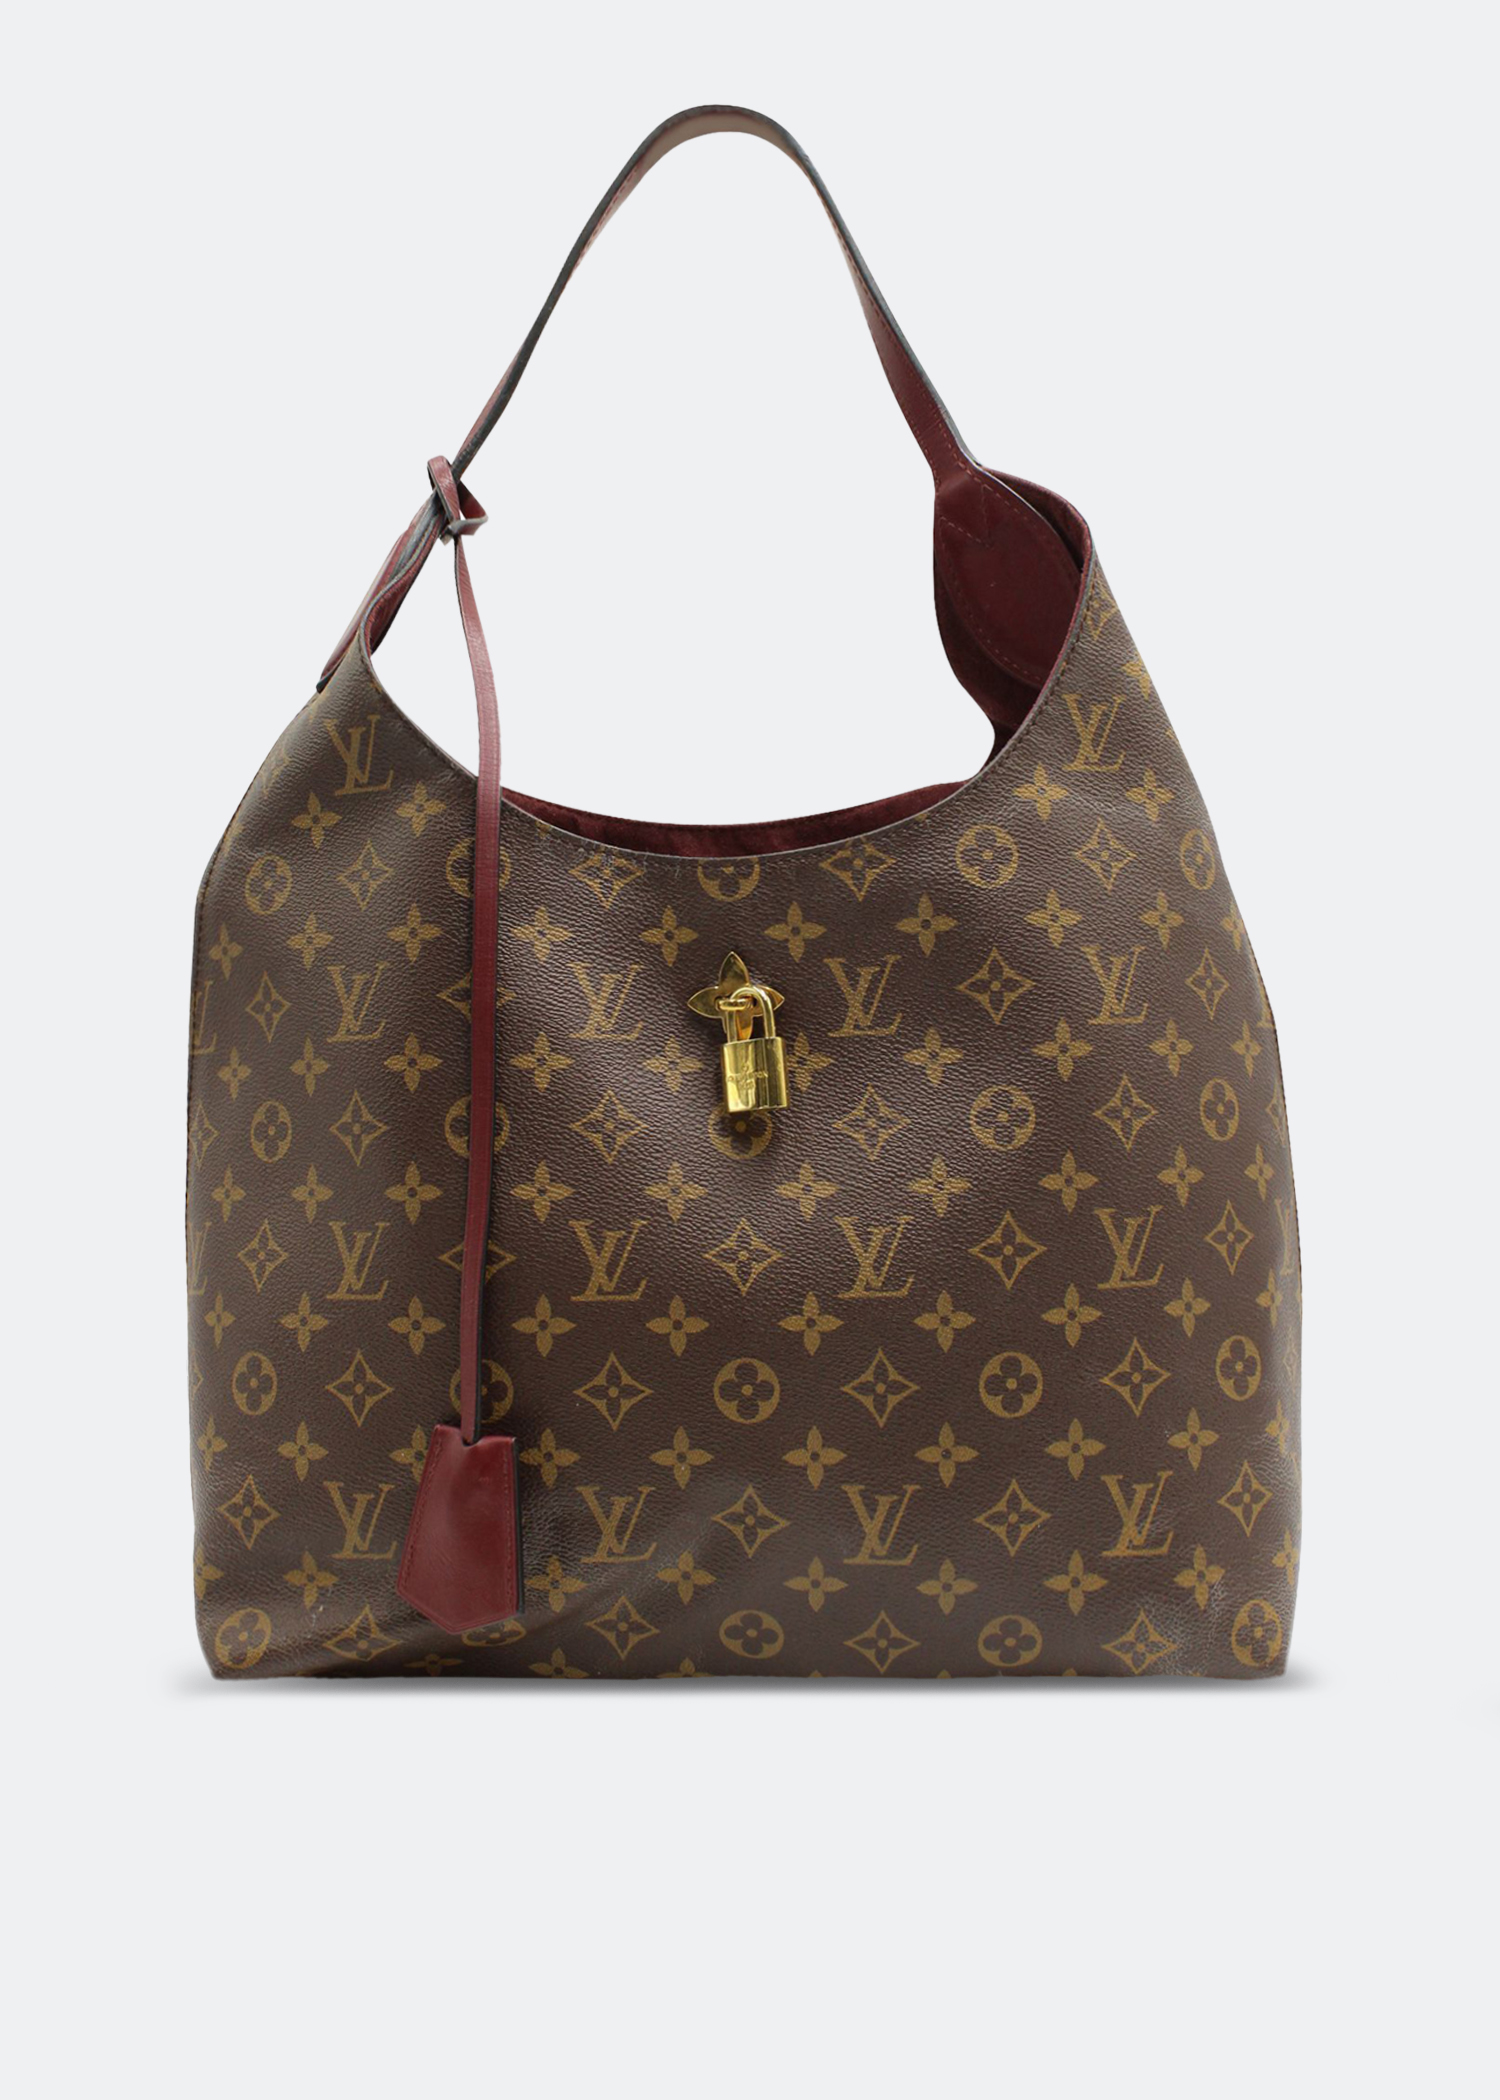 Louis Vuitton Pre-Loved Monogram Hobo Flower bag for Women - Brown